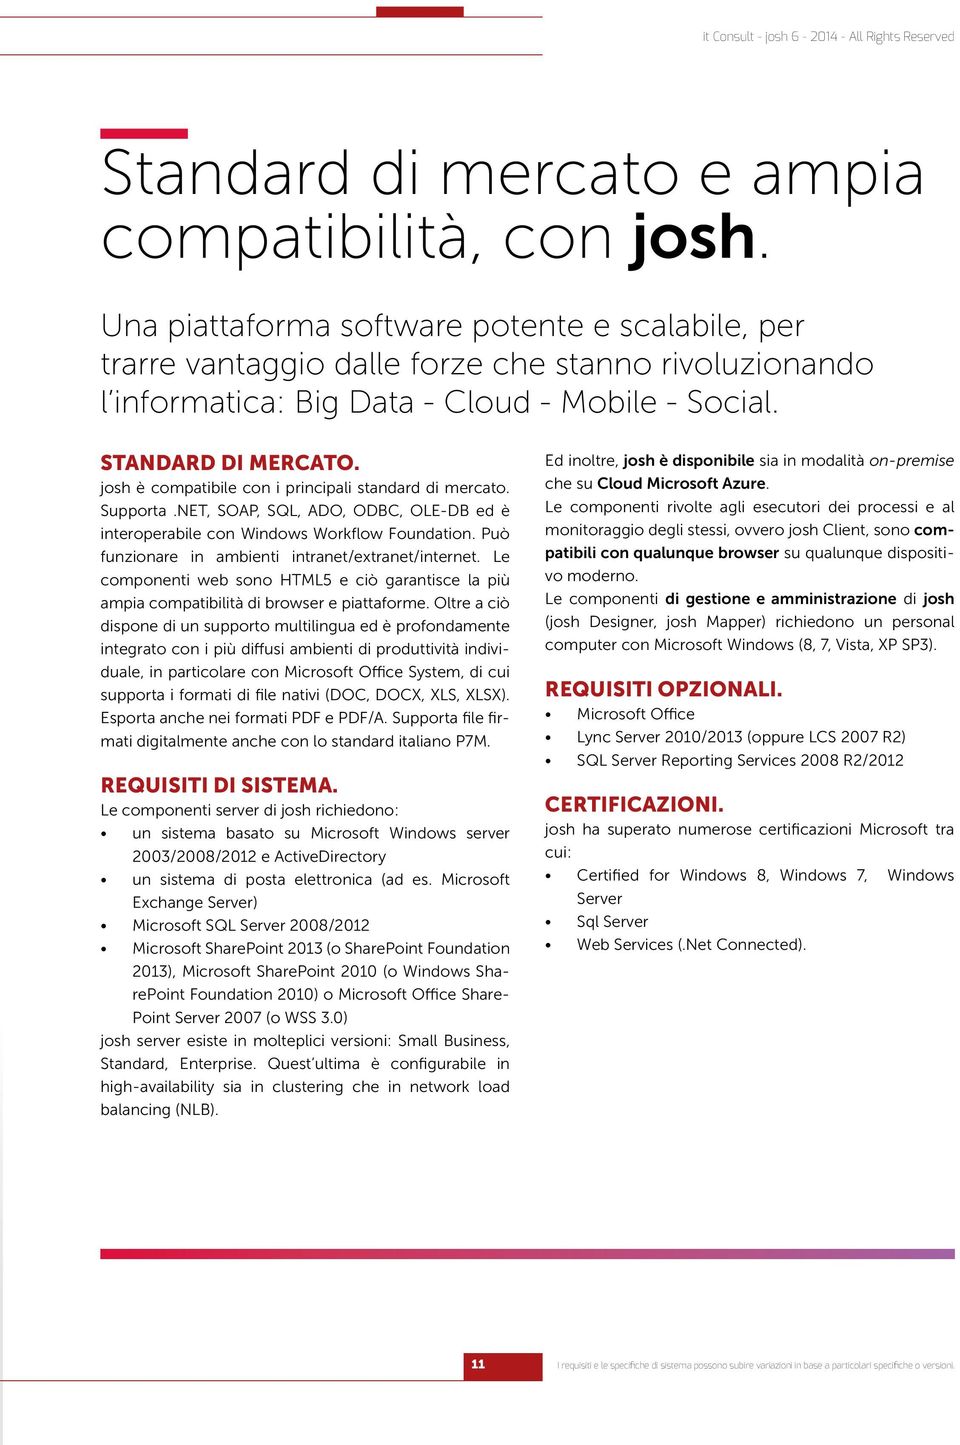 josh è compatibile con i principali standard di mercato. Supporta.NET, SOAP, SQL, ADO, ODBC, OLE-DB ed è interoperabile con Windows Workflow Foundation.